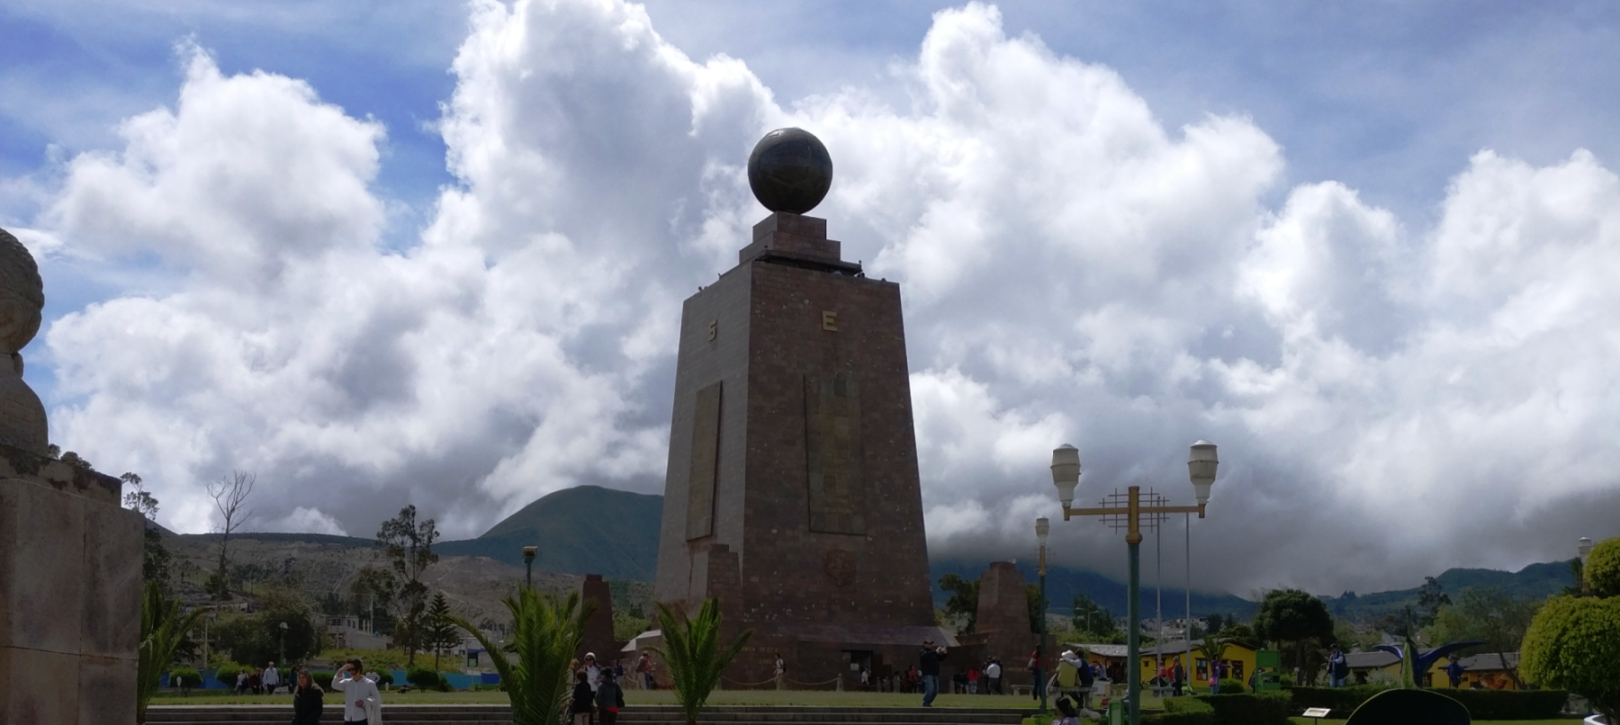 Equador - equator